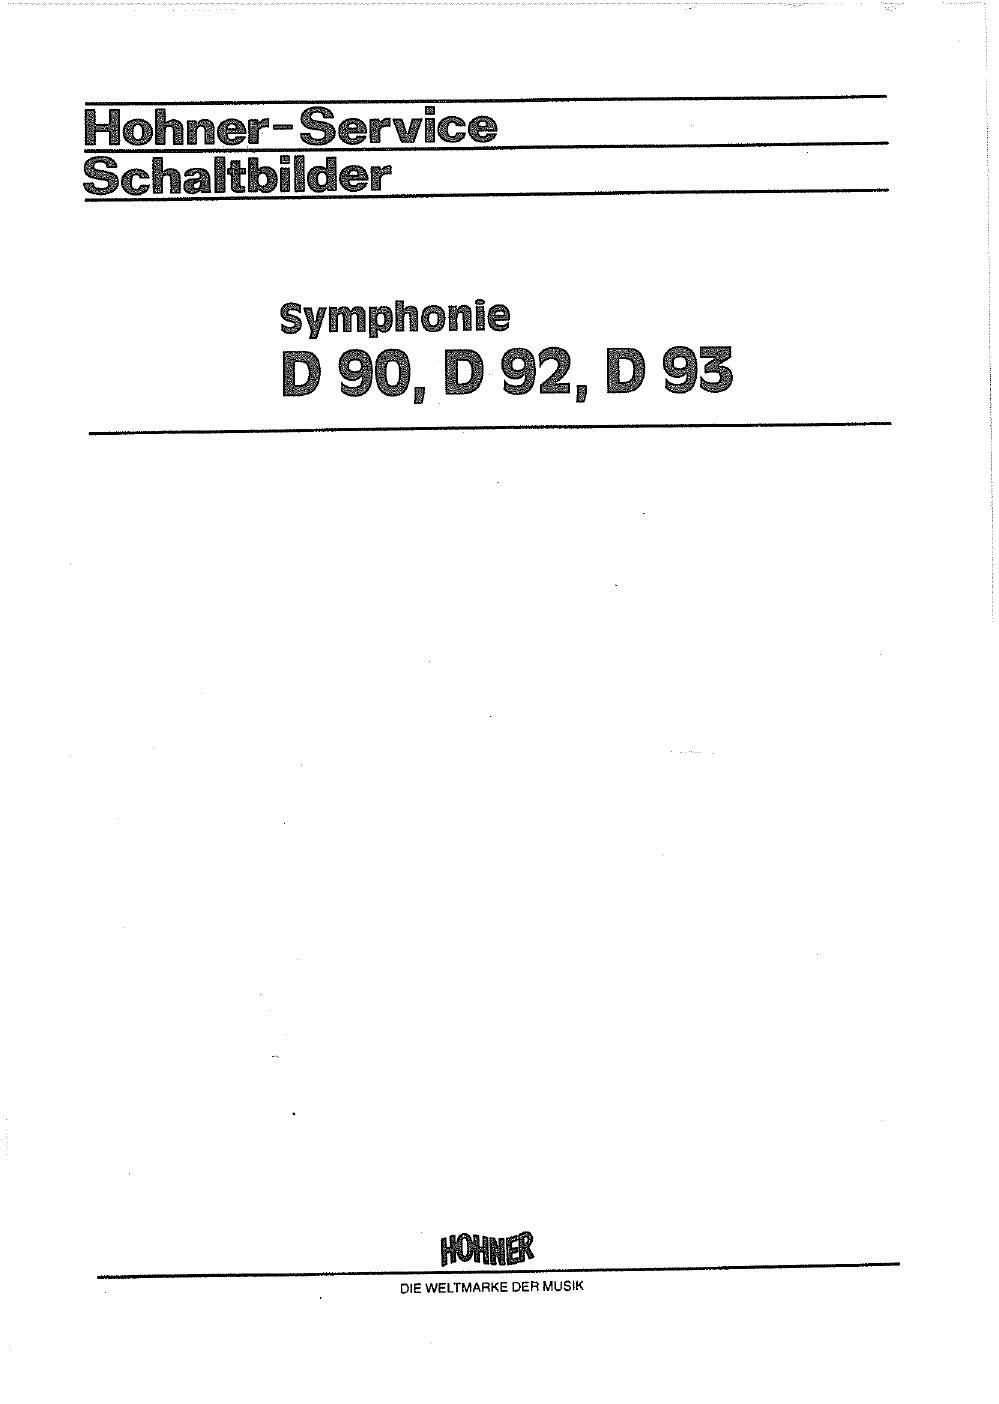 hohner symphonie d90 d92 d93 service manual